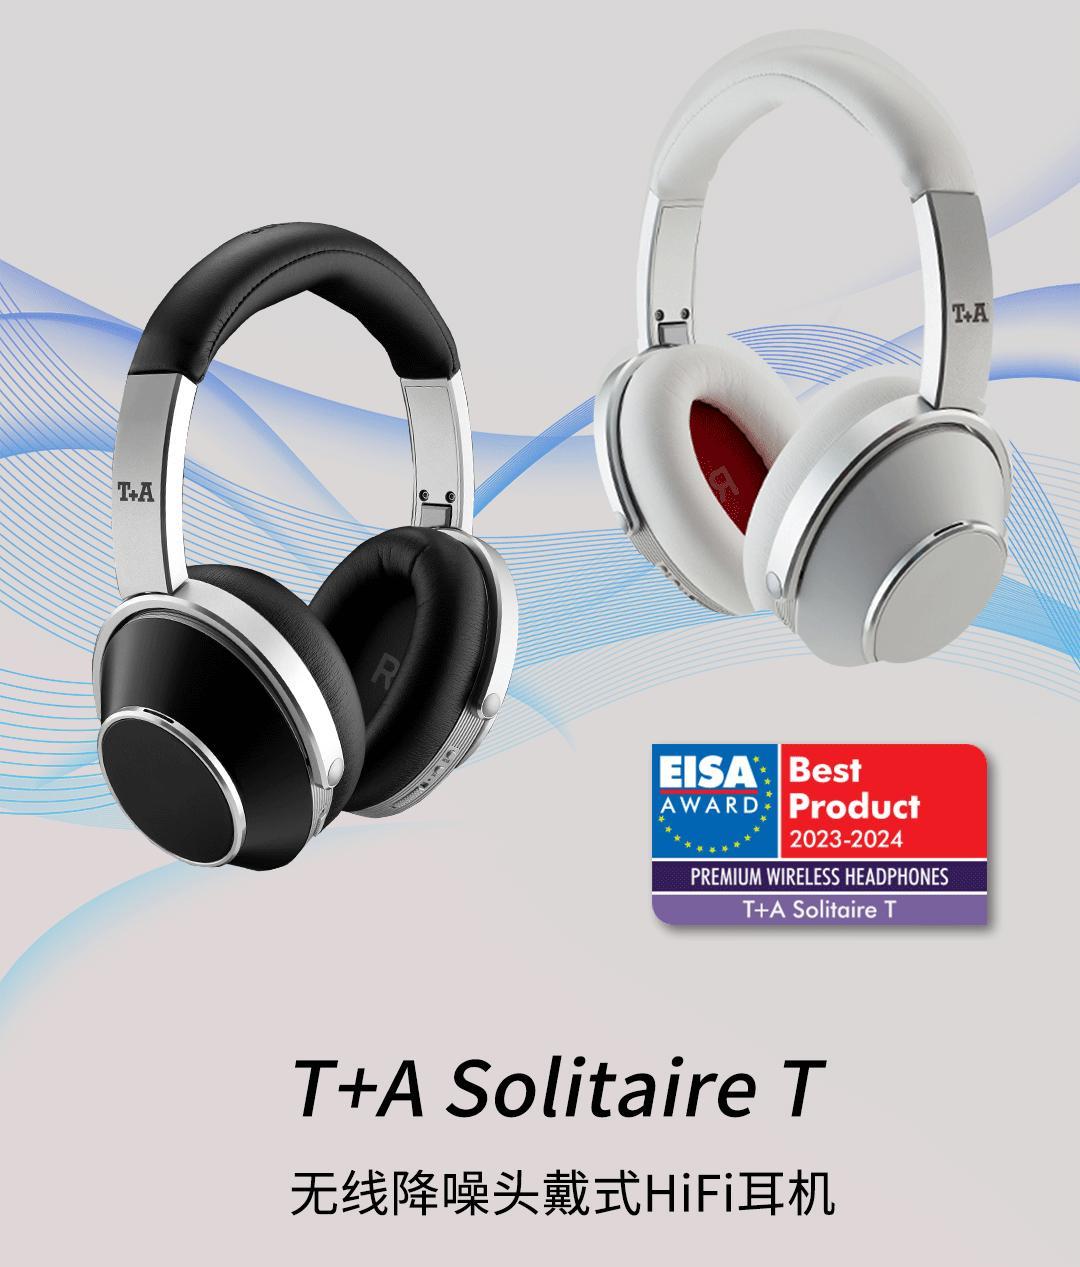 德國T+A 聽佳音 Solitaire T 無線降噪頭戴式HiFi耳機 榮獲：EISA 2023年最佳無線耳機大獎